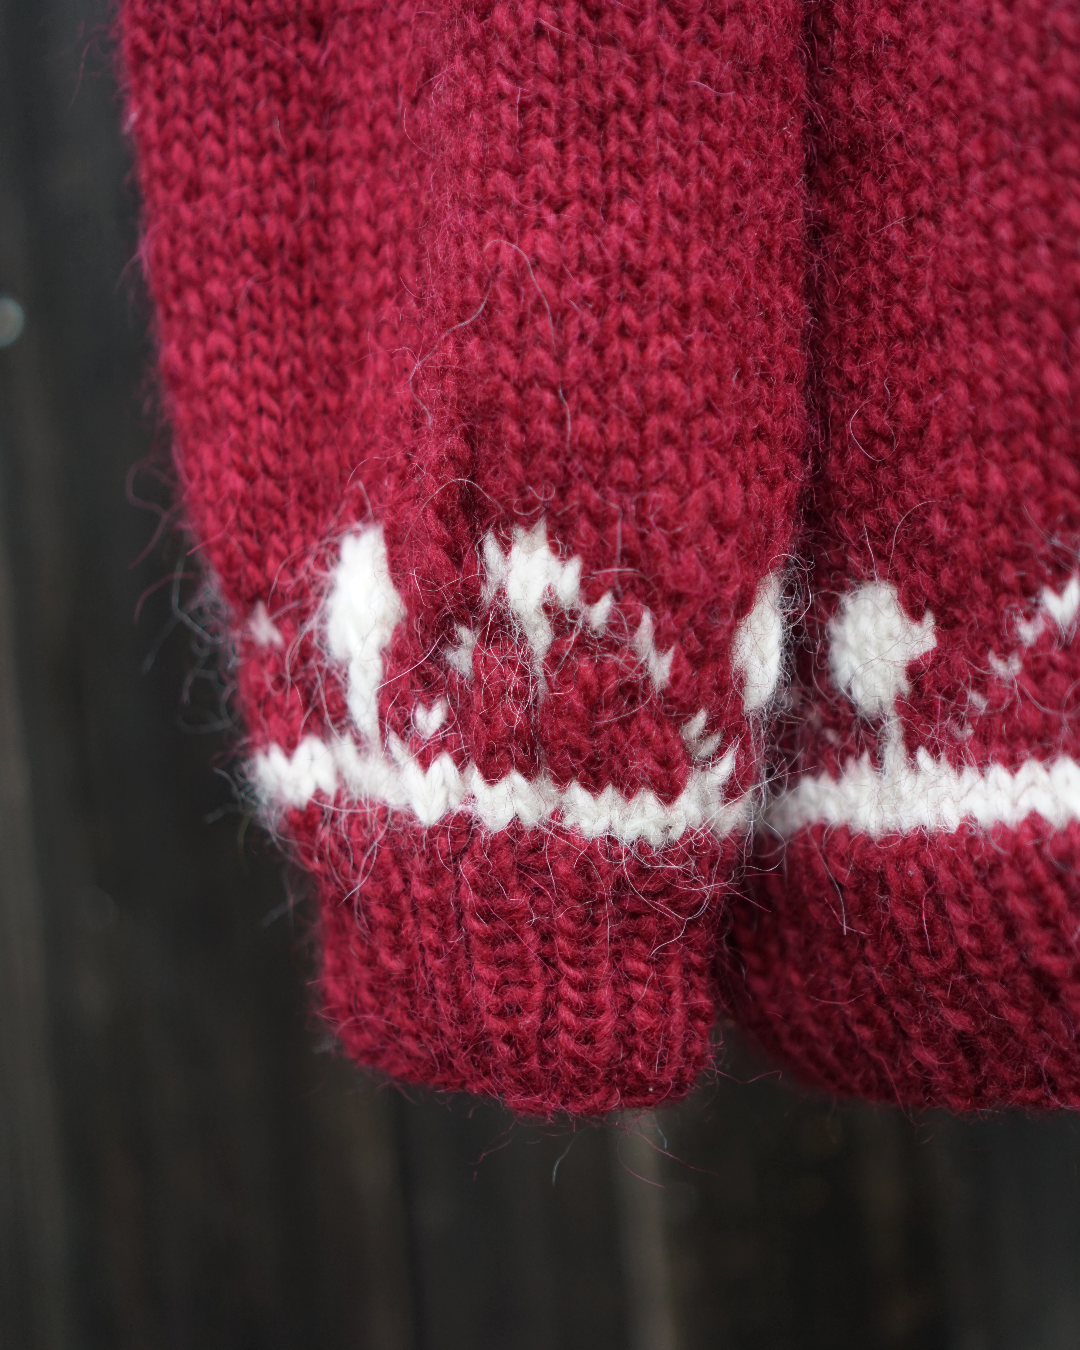 Iceland Knit  Sweater - Dark red